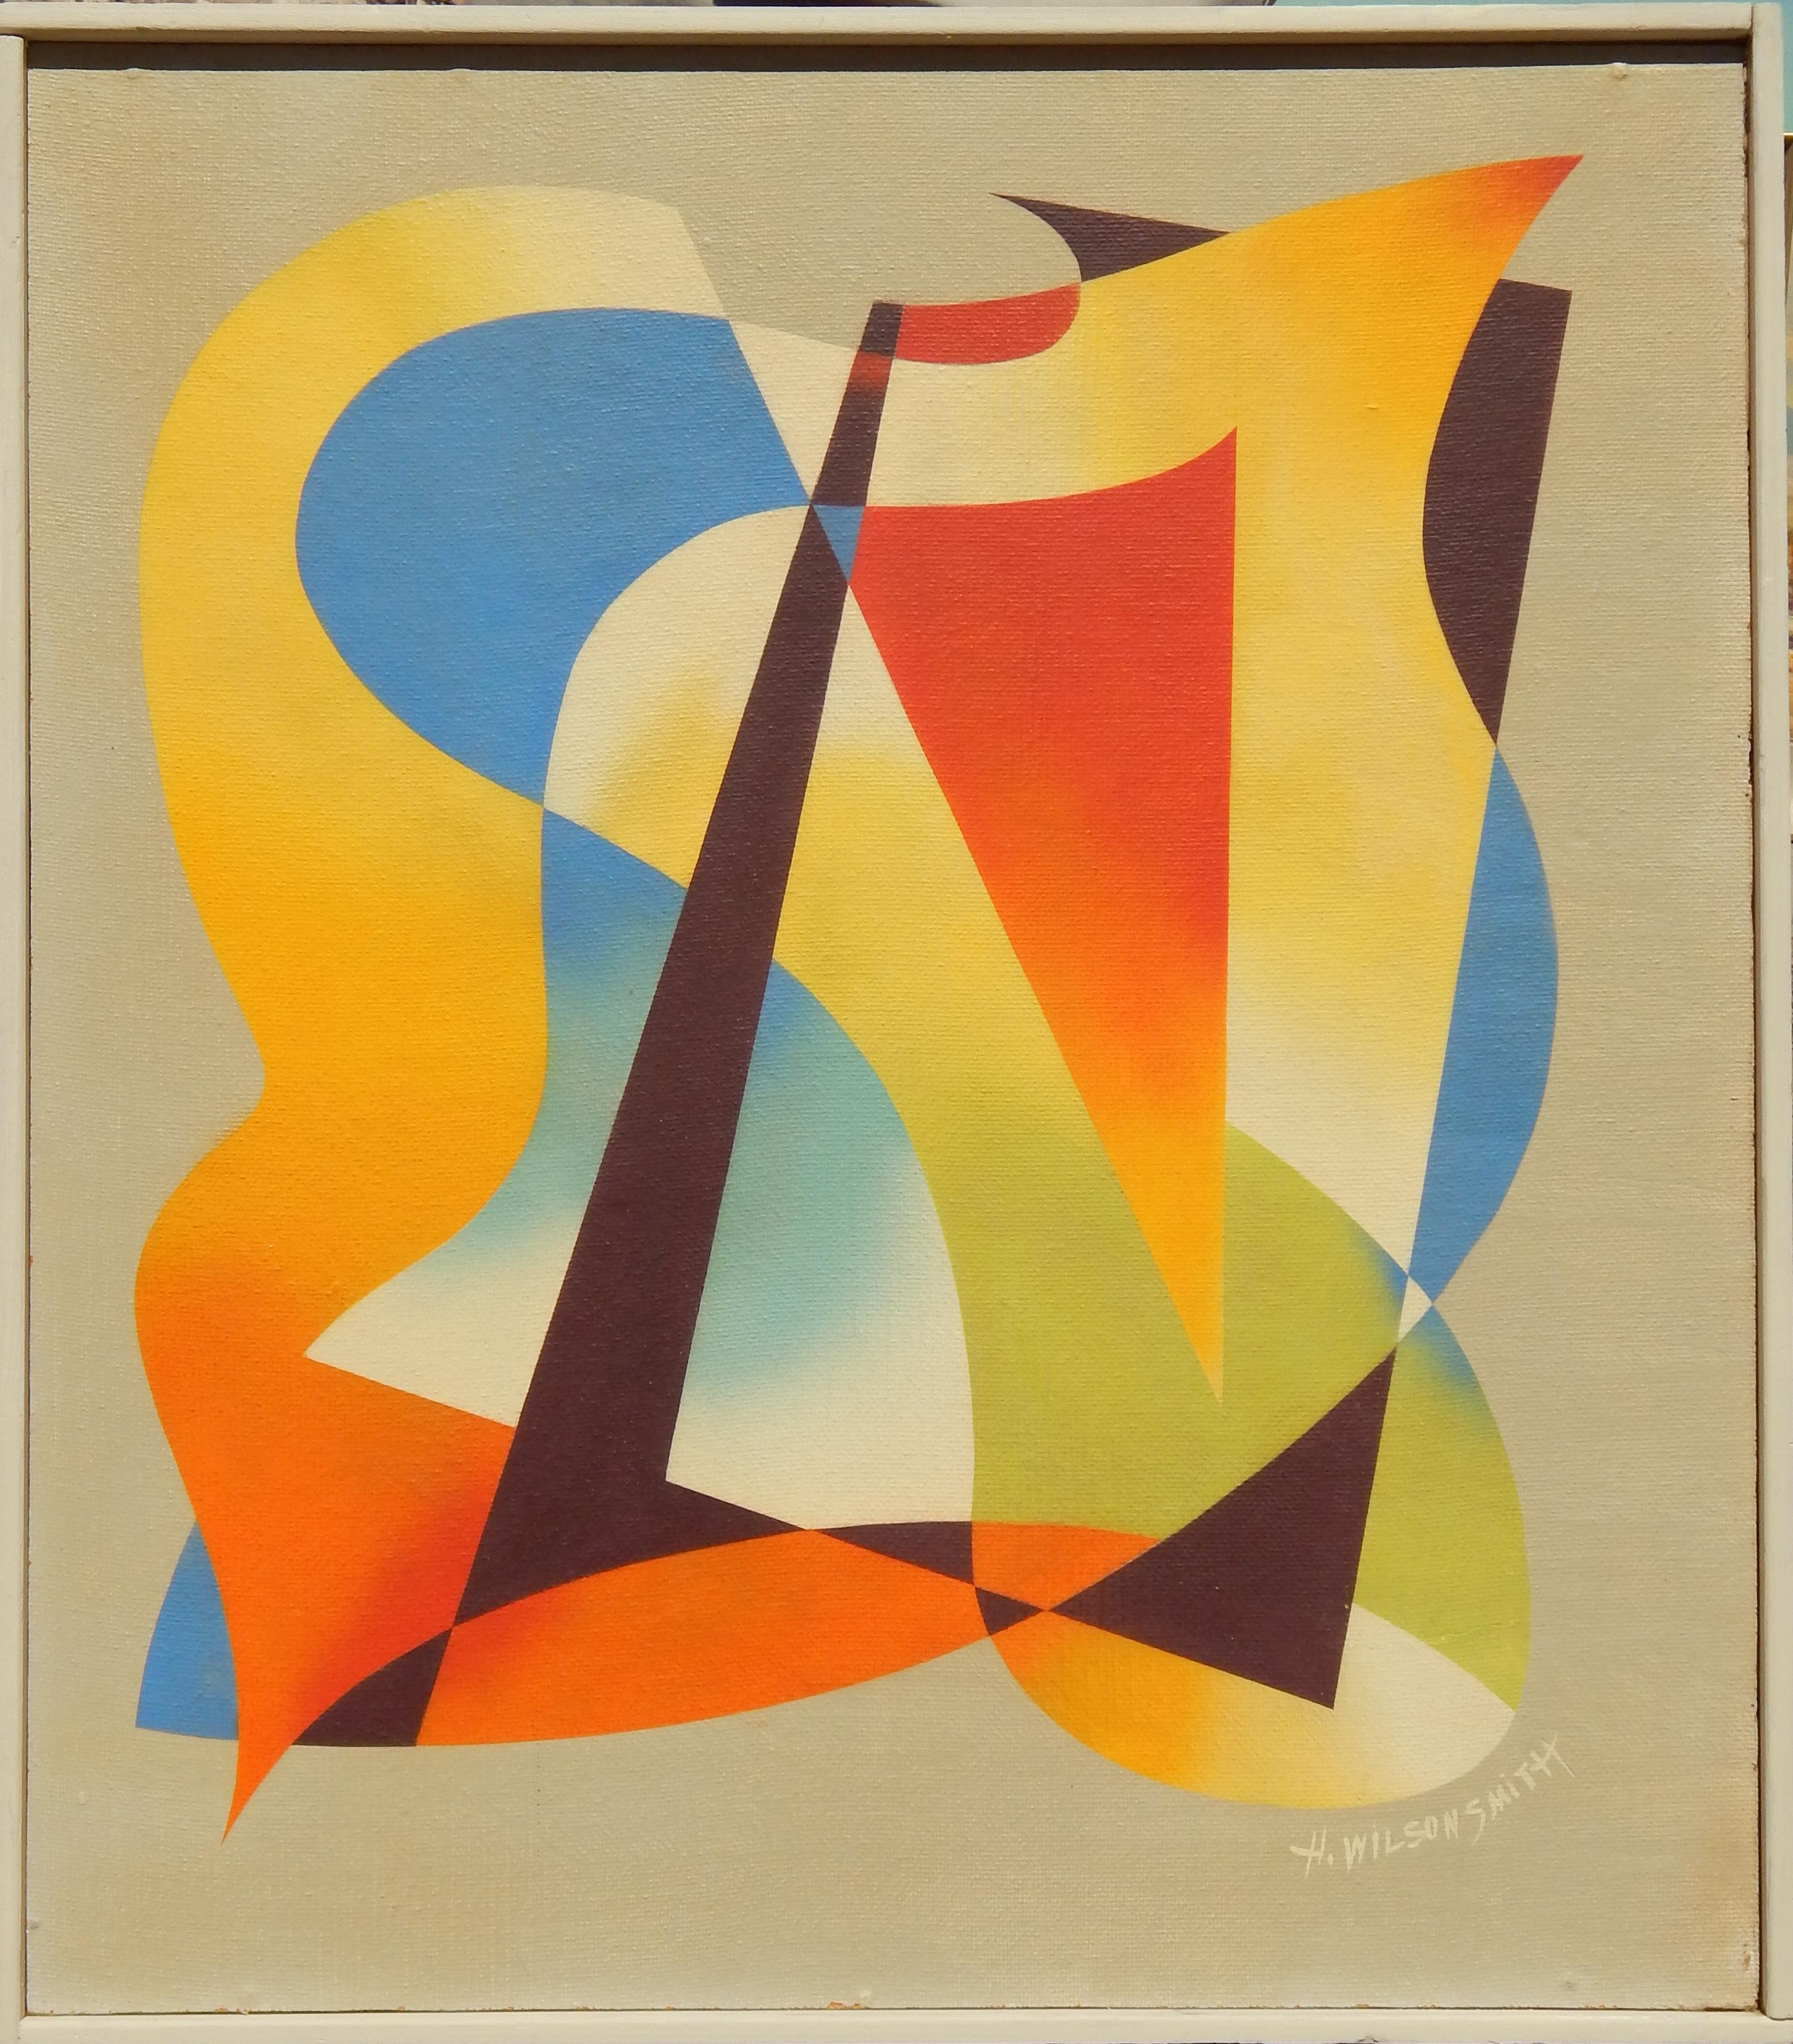 H. Wilson Smith (1901-1981) Artiste californien
Huile sur carton dans le cadre d'origine.
Le tableau mesure 31 3/4